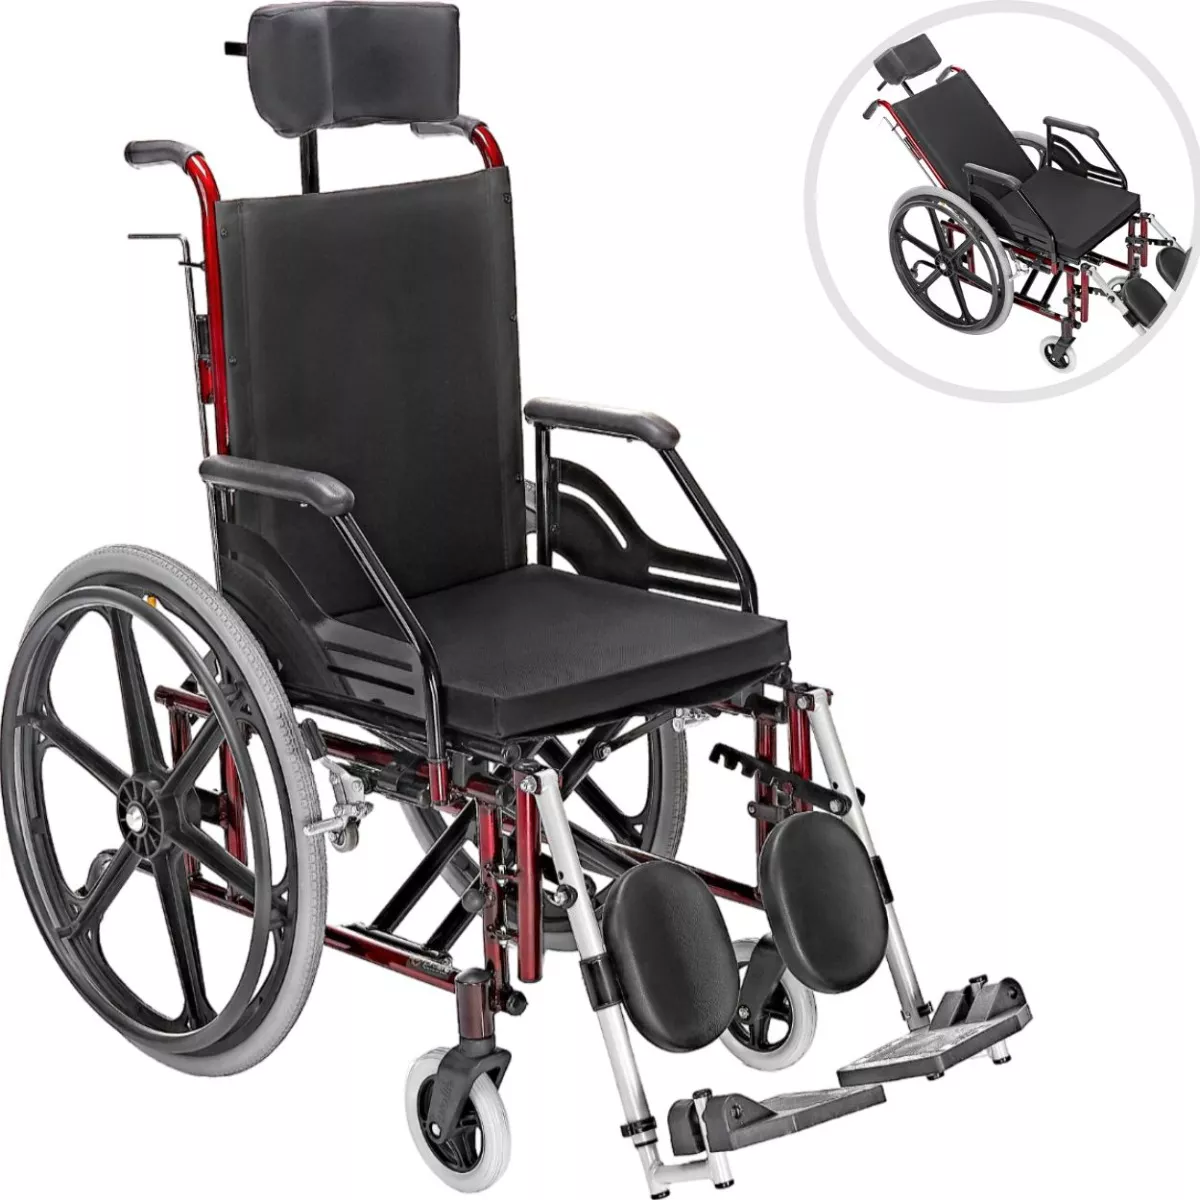 Segunda imagem para pesquisa de cadeira de rodas reclinavel